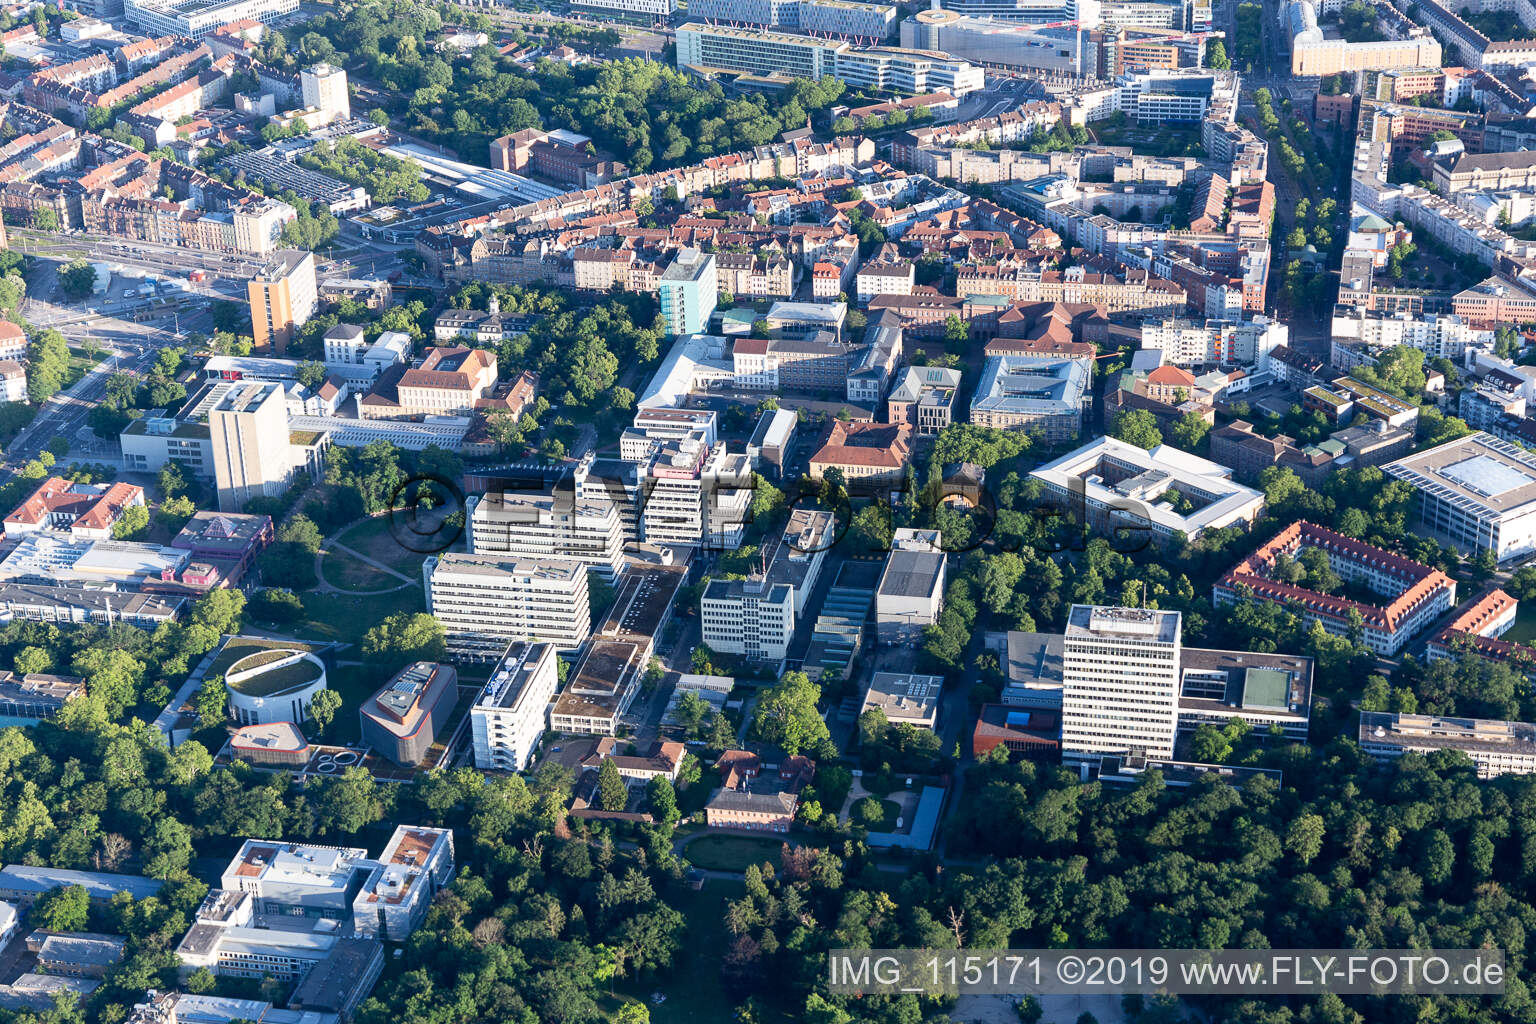 Vue aérienne de TROUSSE à le quartier Innenstadt-Ost in Karlsruhe dans le département Bade-Wurtemberg, Allemagne